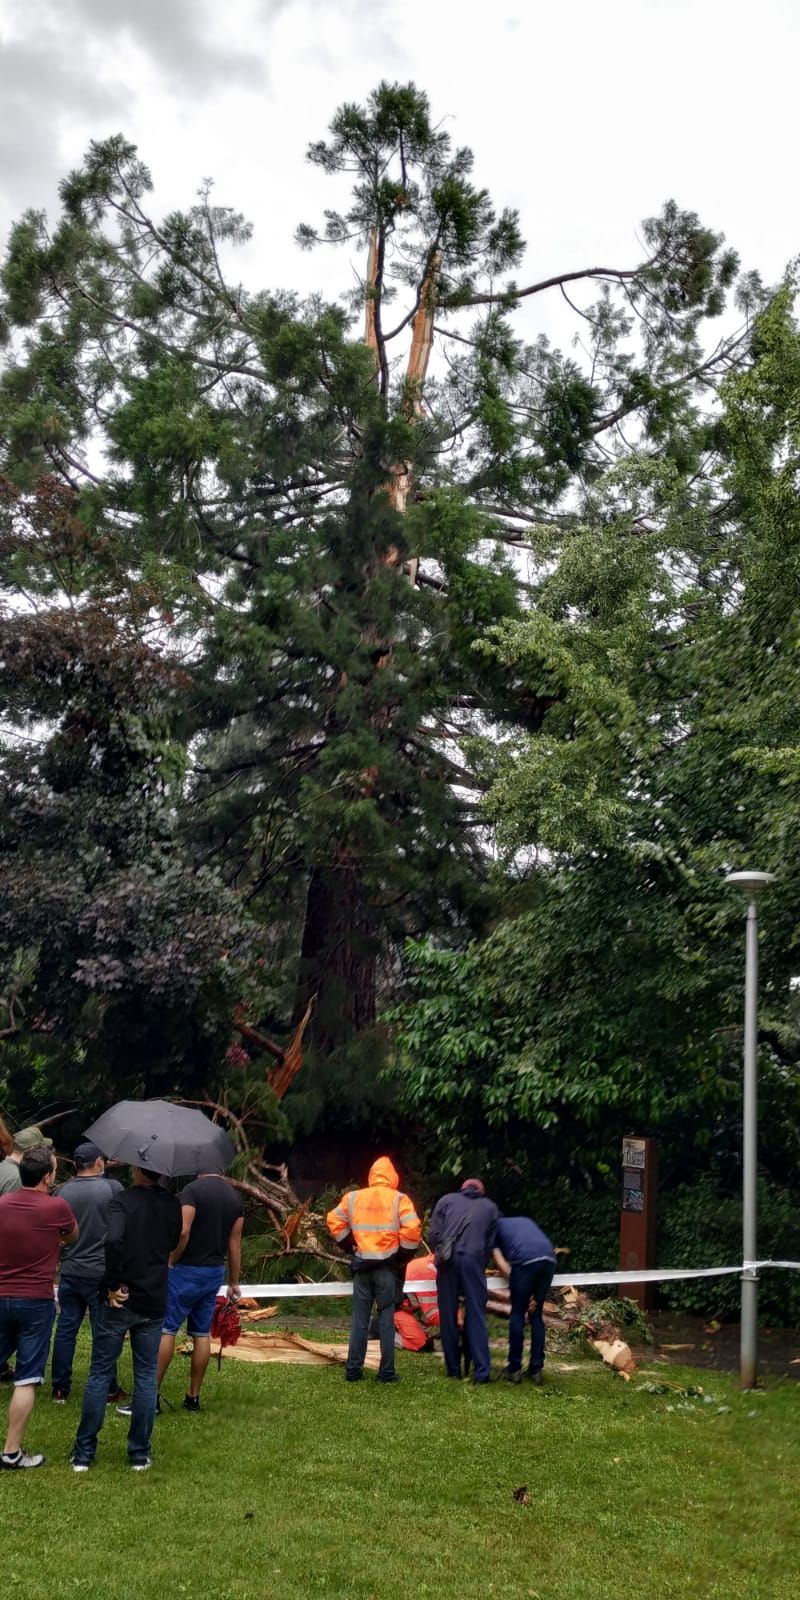 Un llamp trenca una sequoia centenària a Sant Joan de les Abadesses